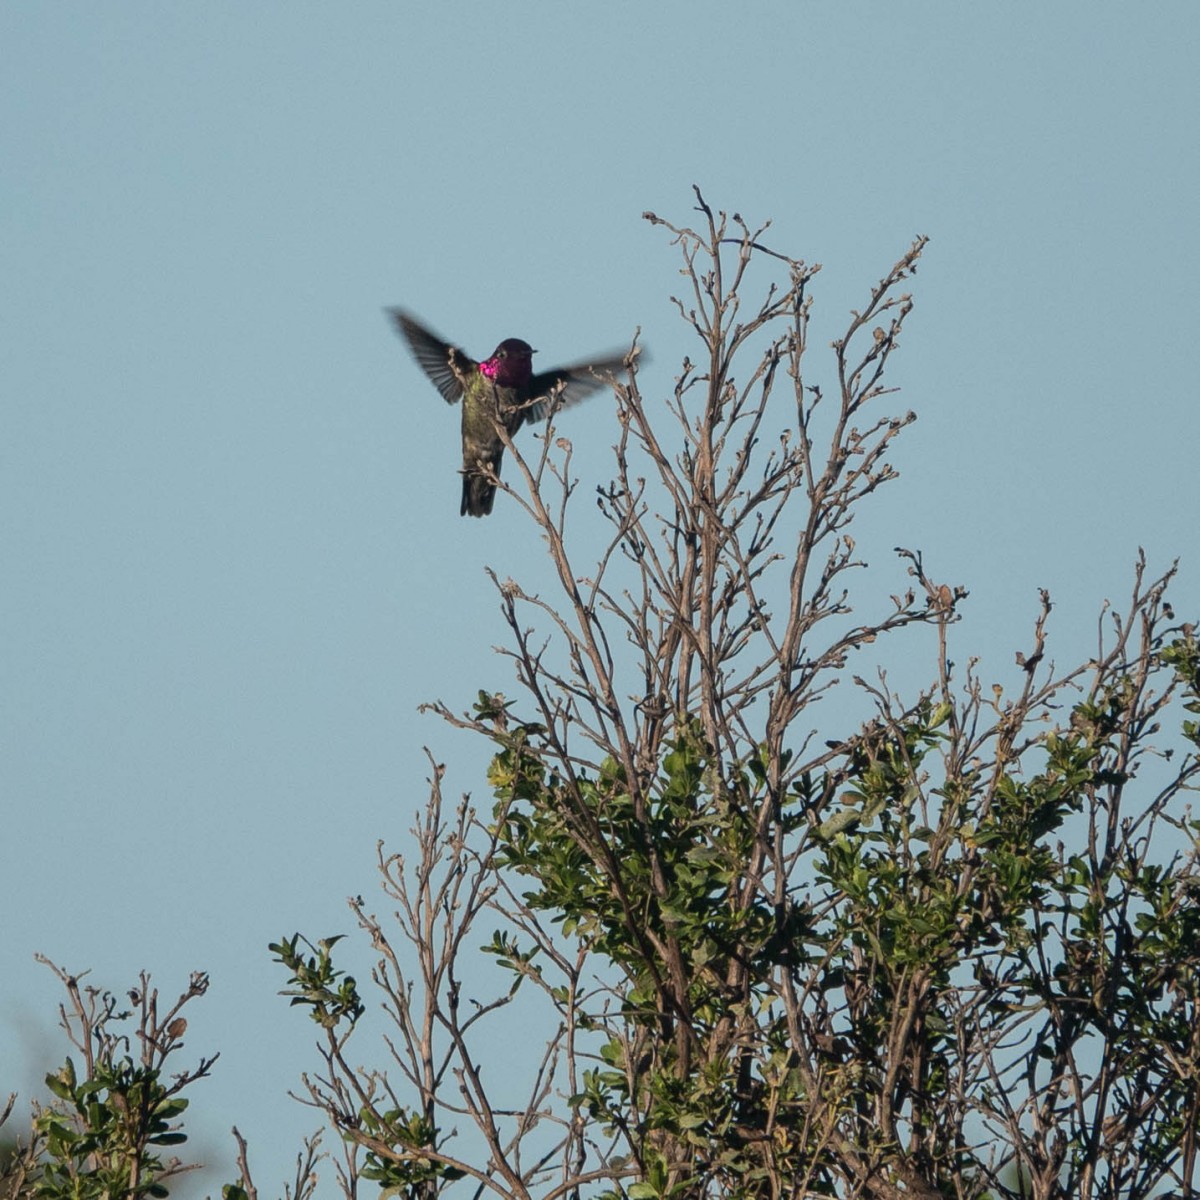 Anna's Hummingbird in flight.